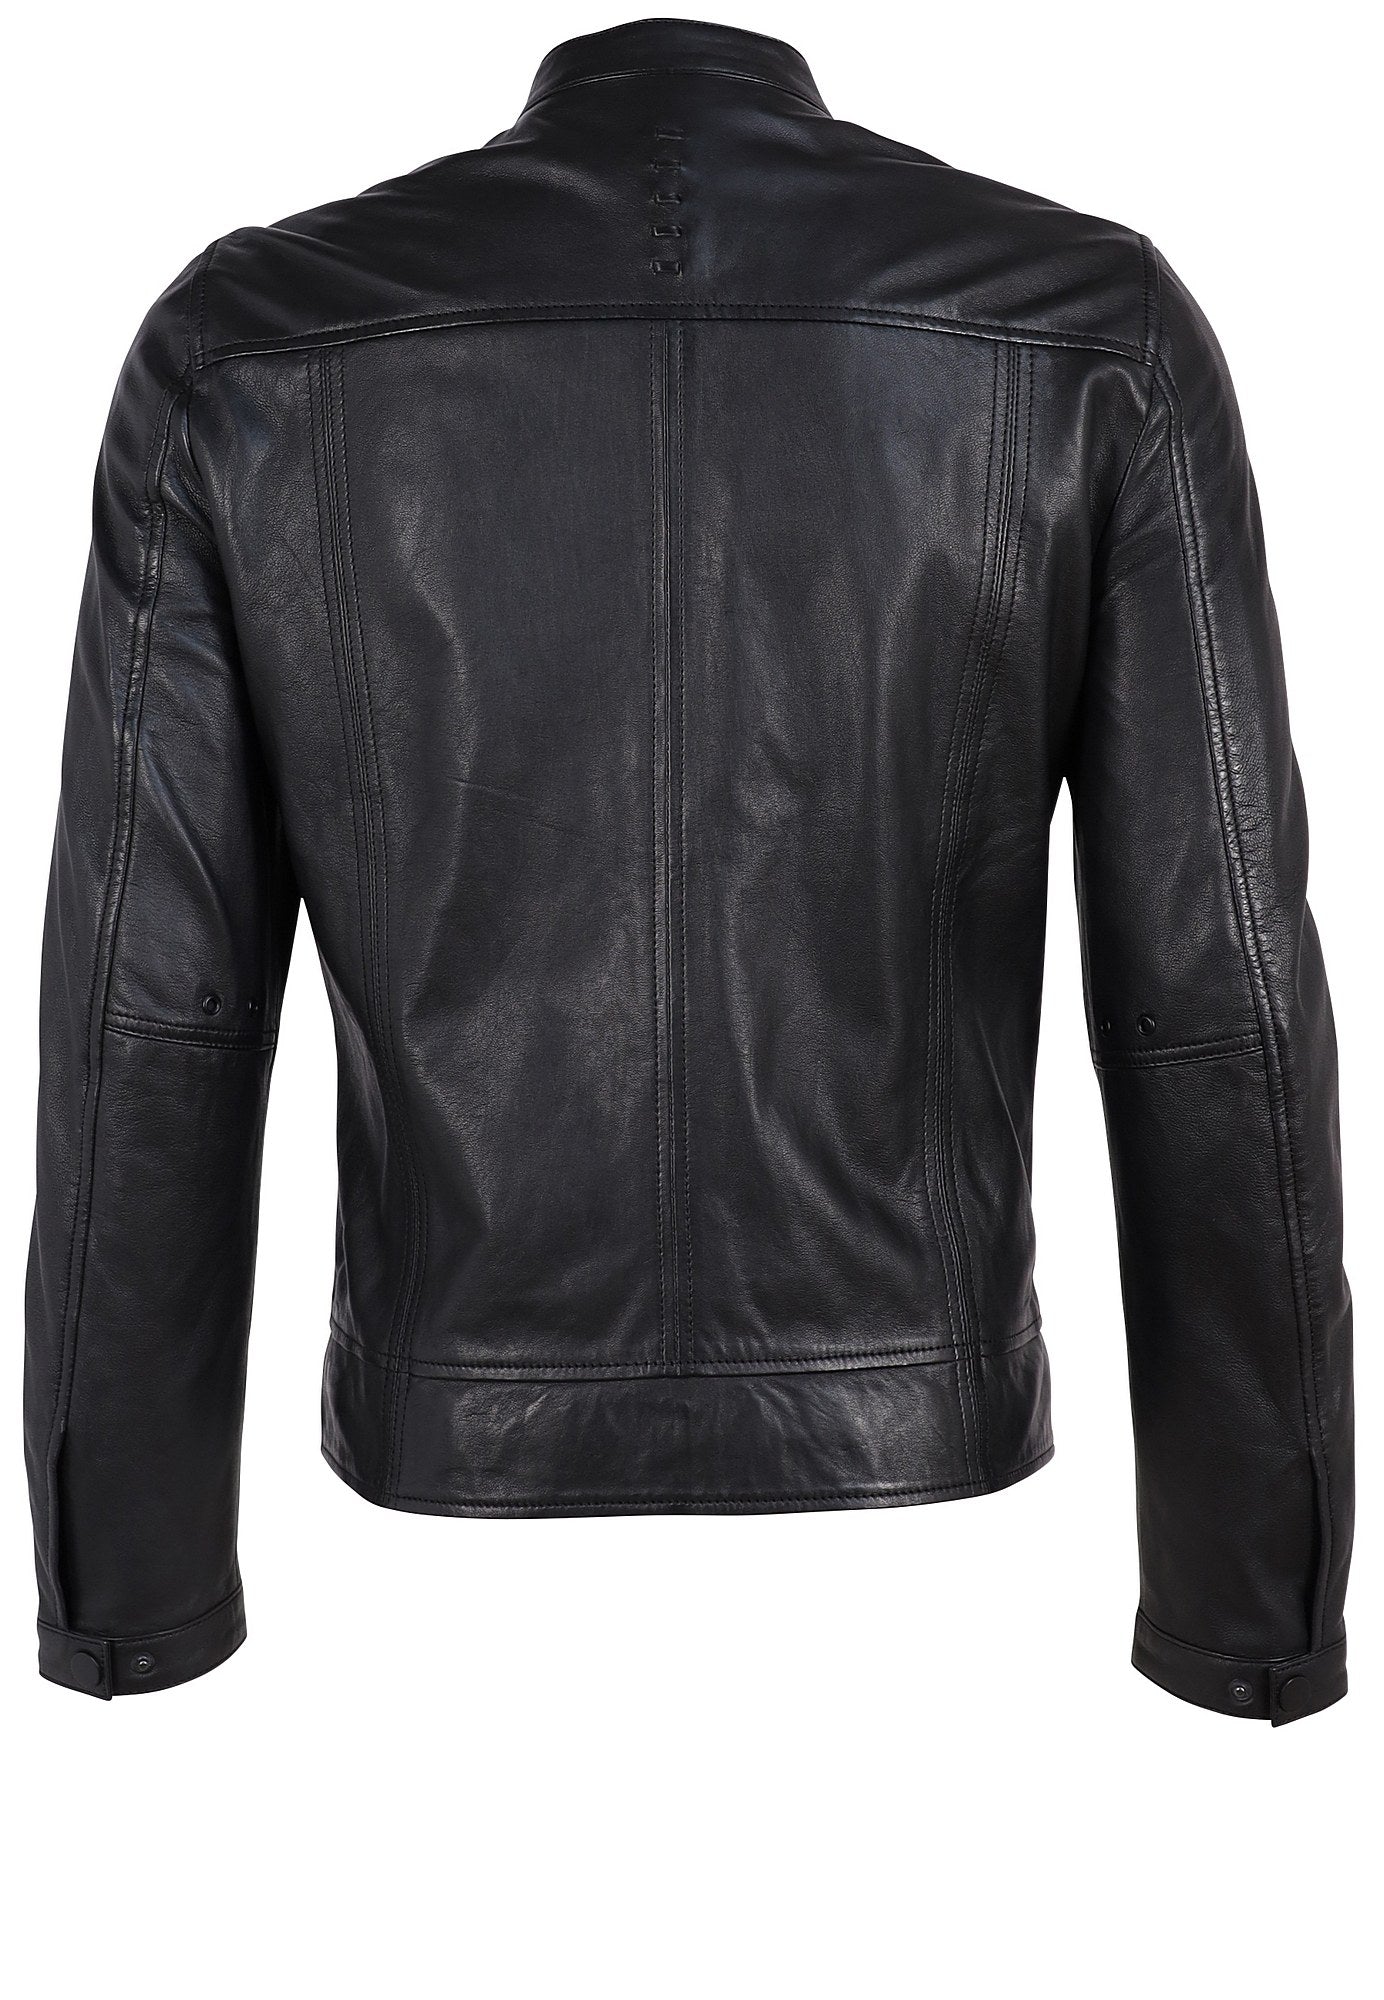 Abe RF Leather Jacket, Black